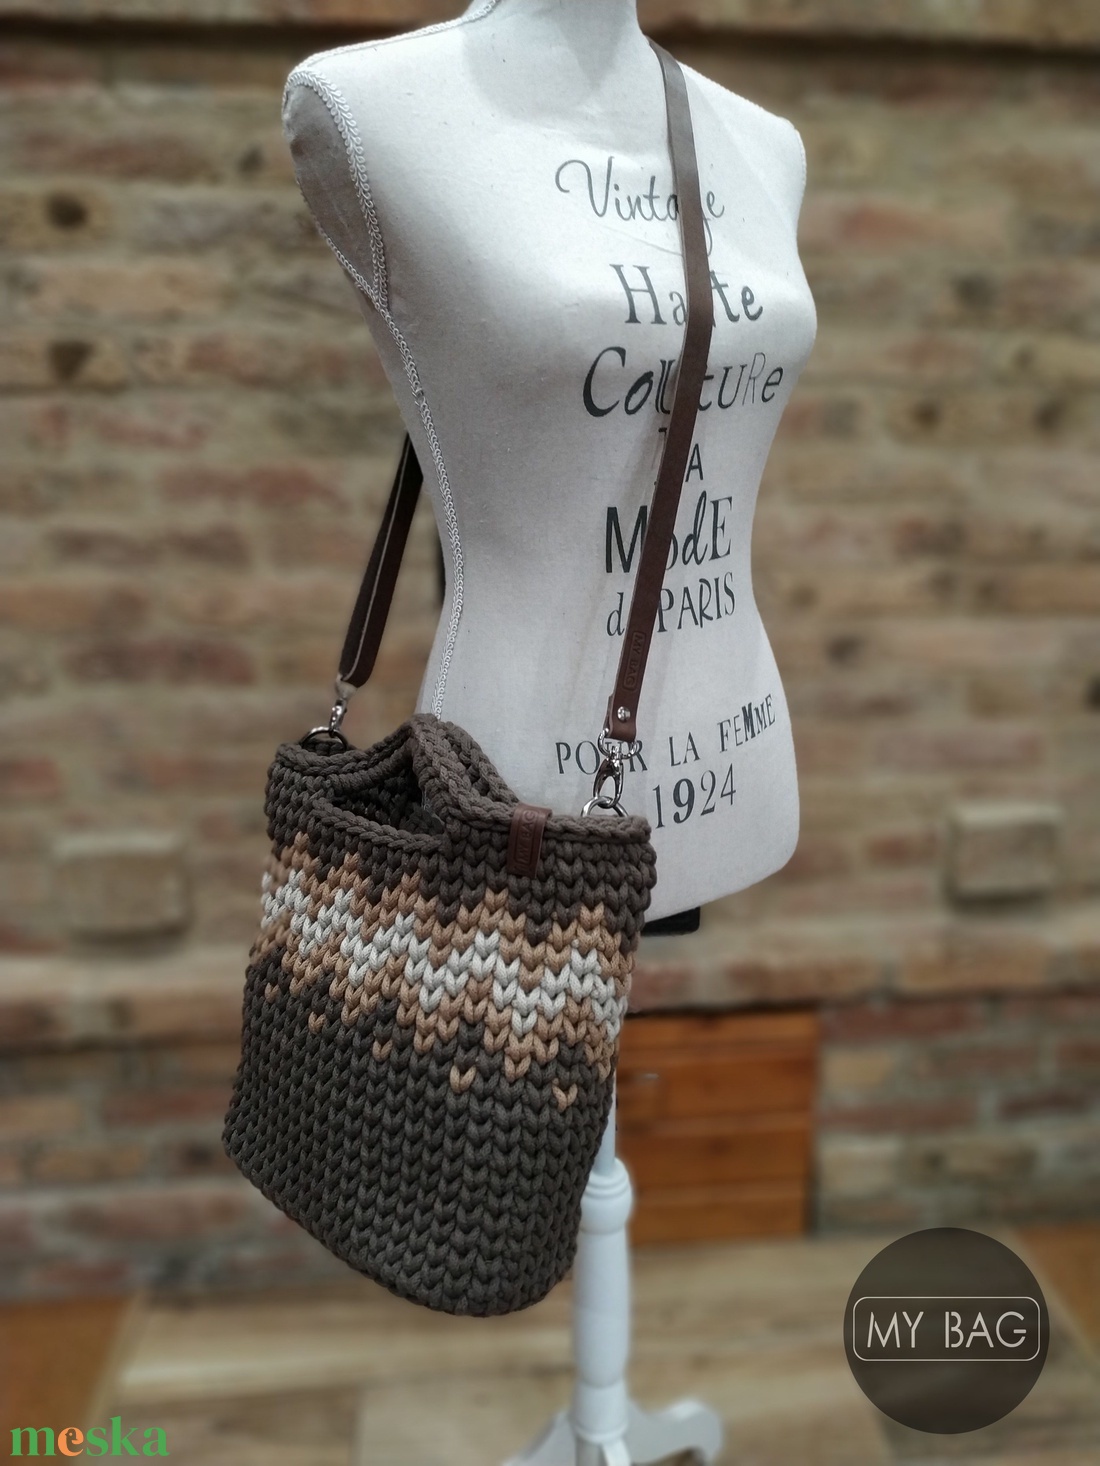 Horgolt női crossbody táska SÖTÉTBARNA színben bőr vállpánttal - Cikk-cakk mintával - BIG - táska & tok - kézitáska & válltáska - vállon átvethető táska - Meska.hu